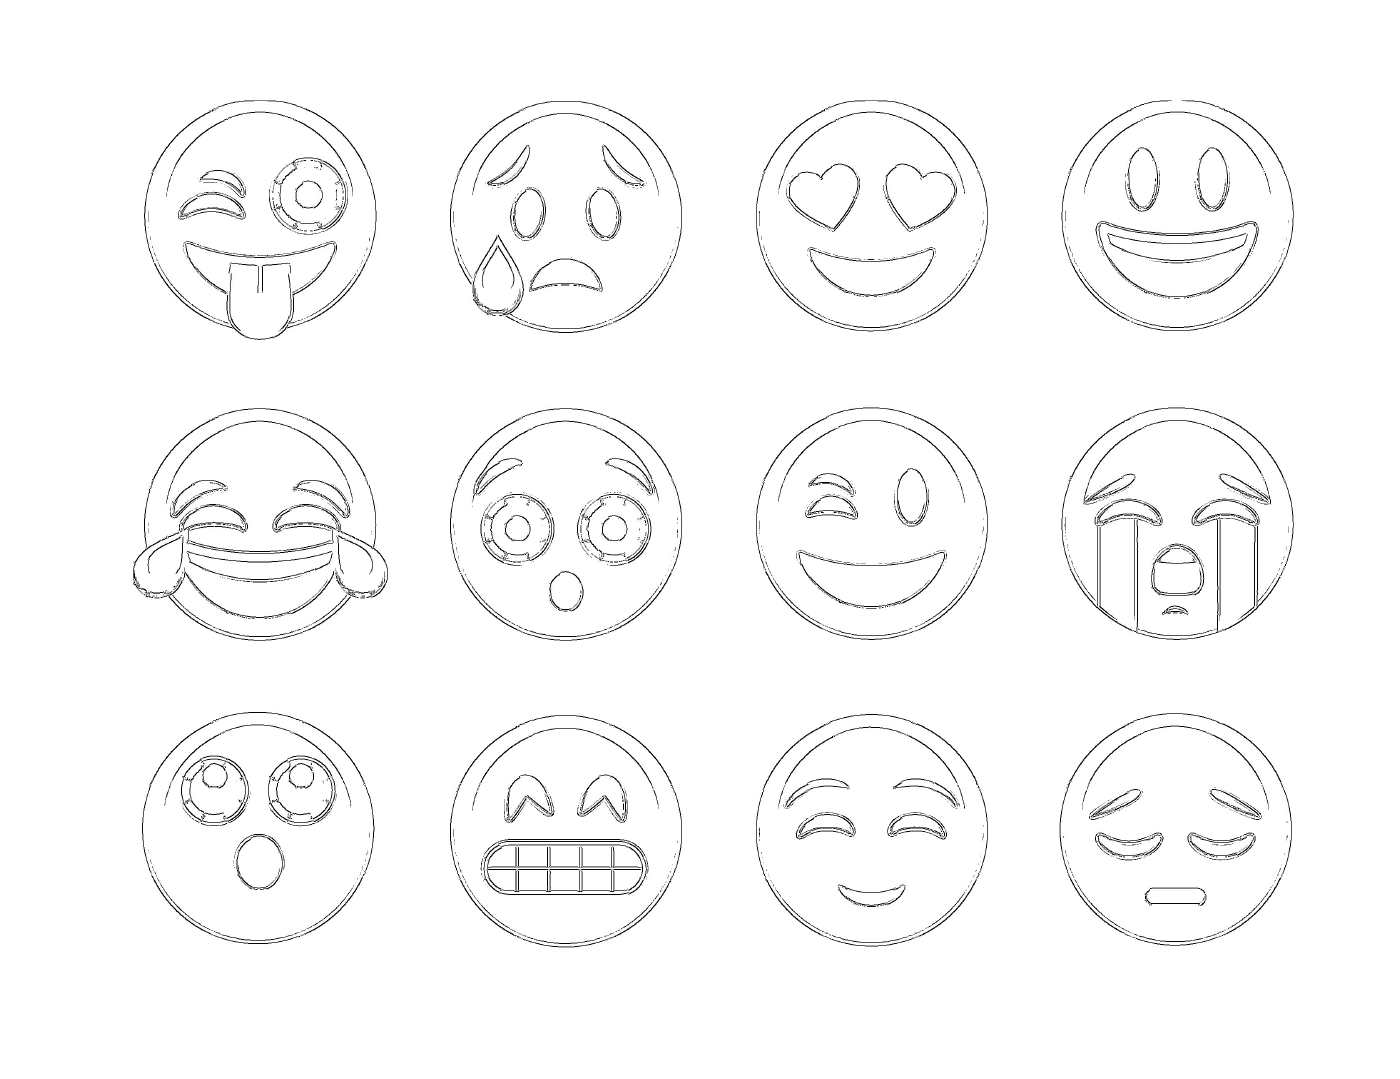  Un conjunto de 12 emoticonos diferentes 